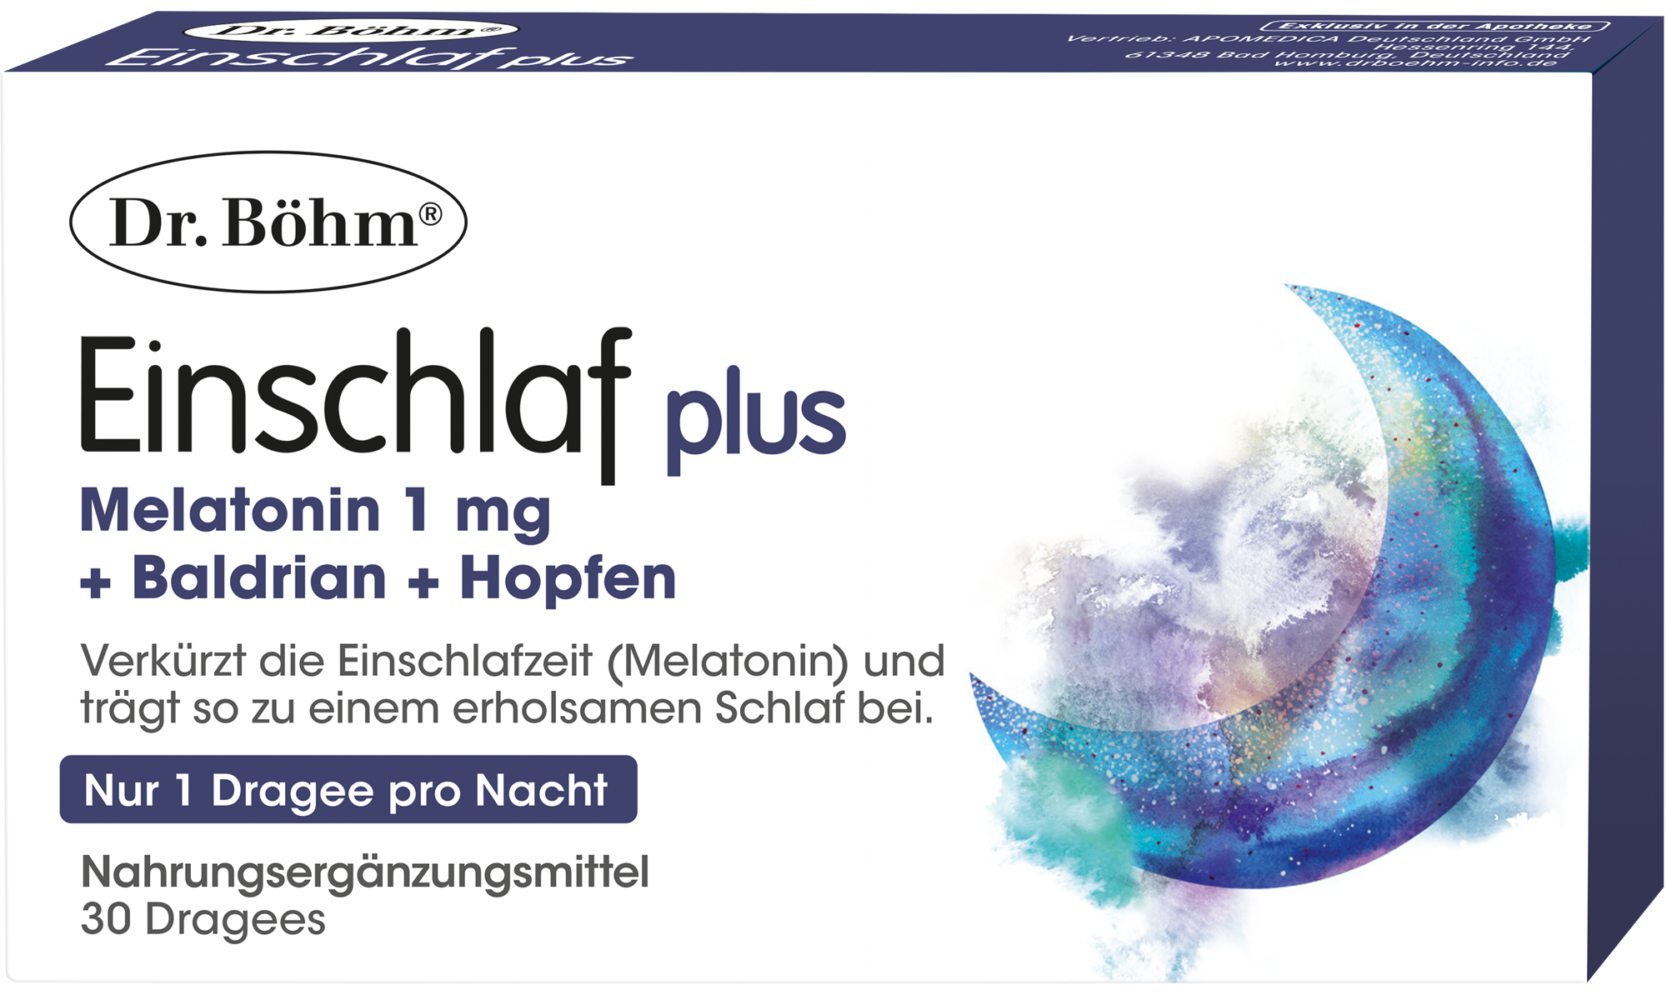 Dr. Böhm® Einschlaf plus